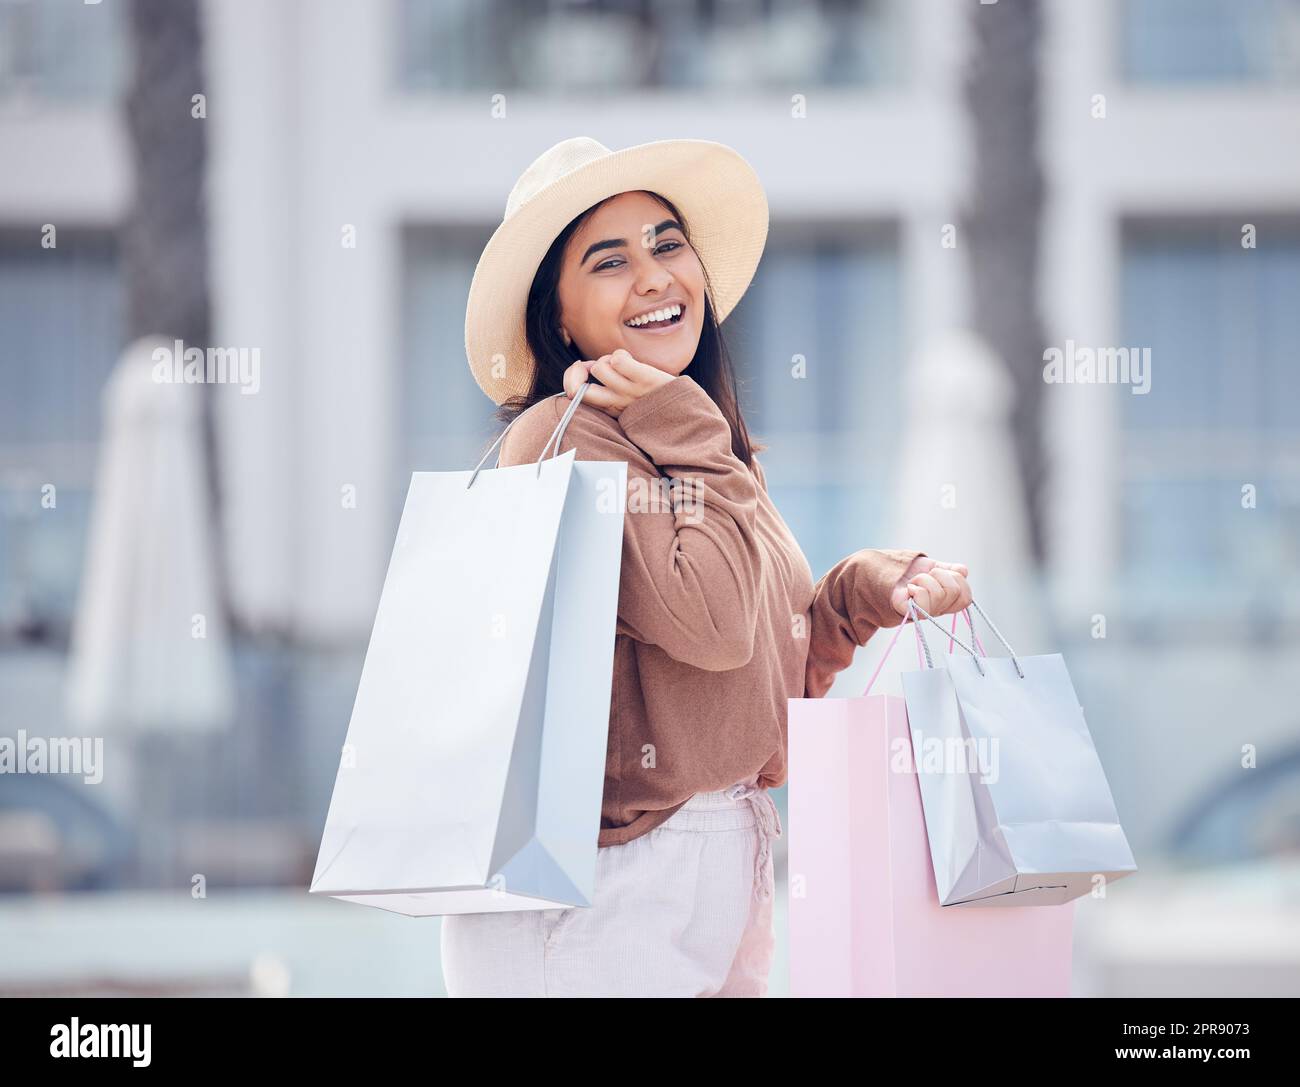 Ein weiterer erfolgreicher Einkaufstag. Eine glückliche junge Frau, die einen Tag mit Einkaufen verbringt. Stockfoto